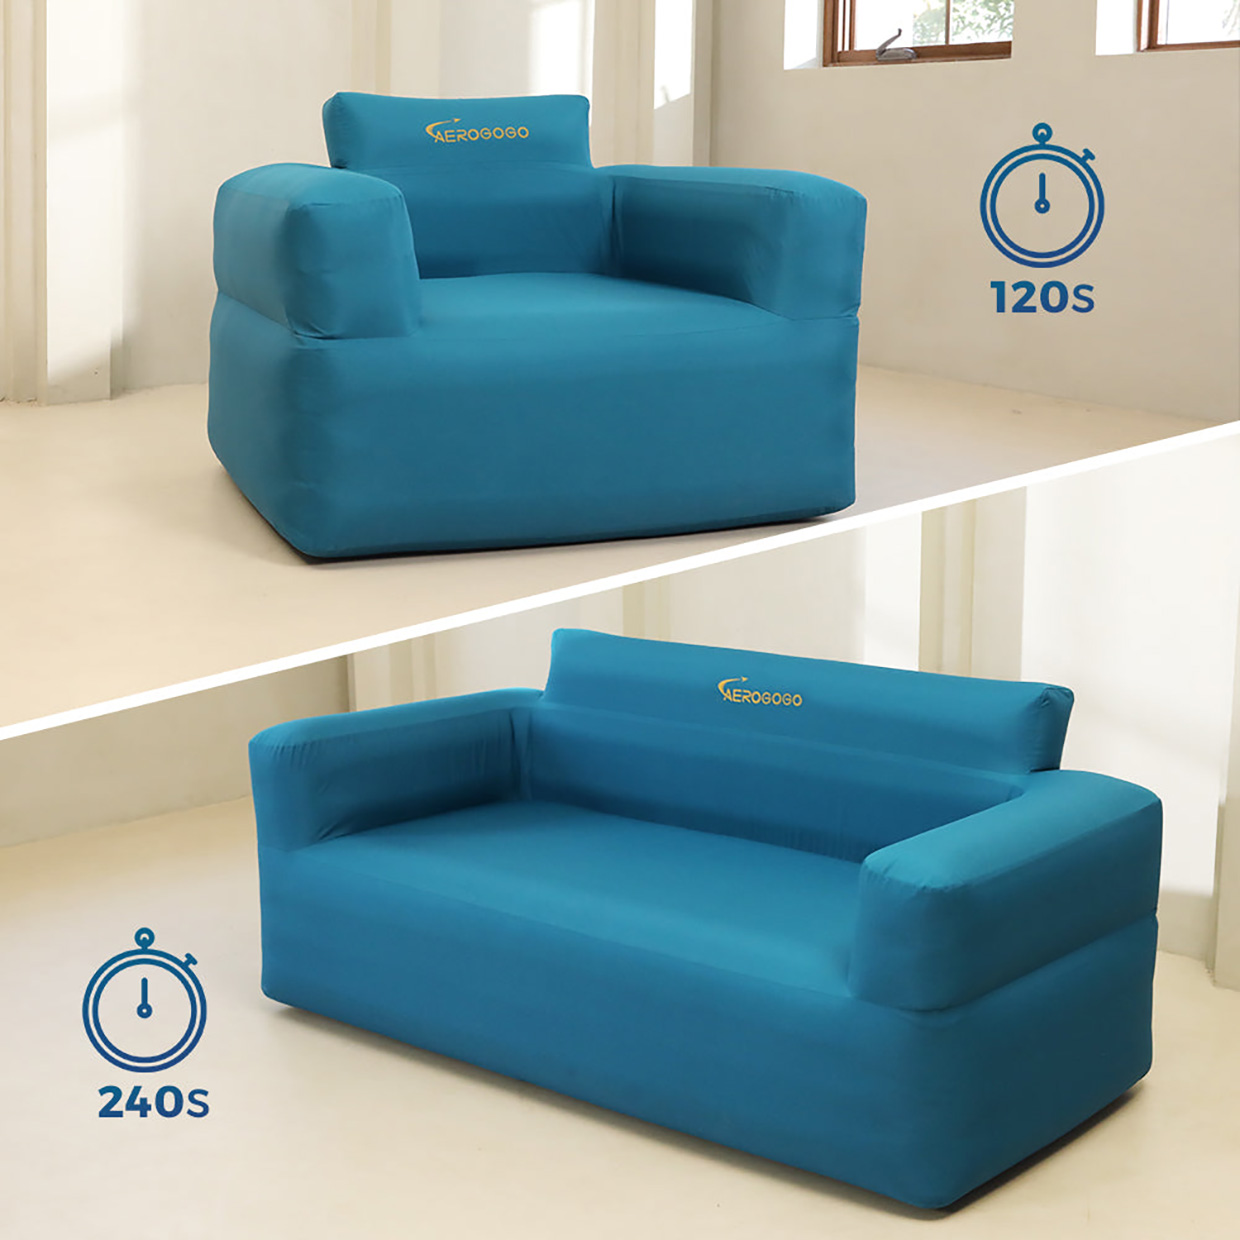 Aerogogo Self-inflating Furniture